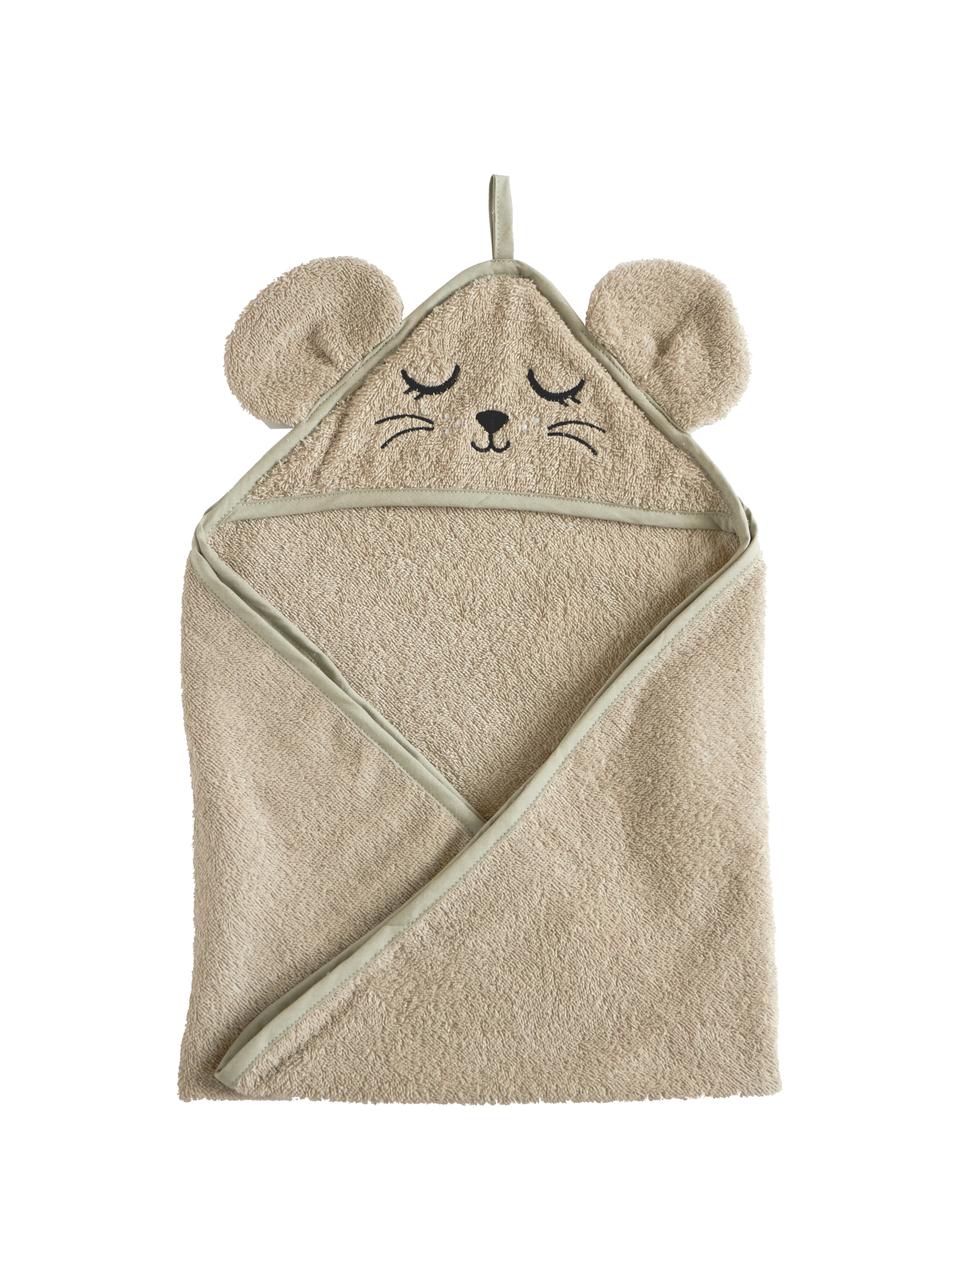 Asciugamano bambini in cotone organico Mouse, 100% cotone organico certificato GOTS, Greige, Larg. 72 x Lung. 72 cm